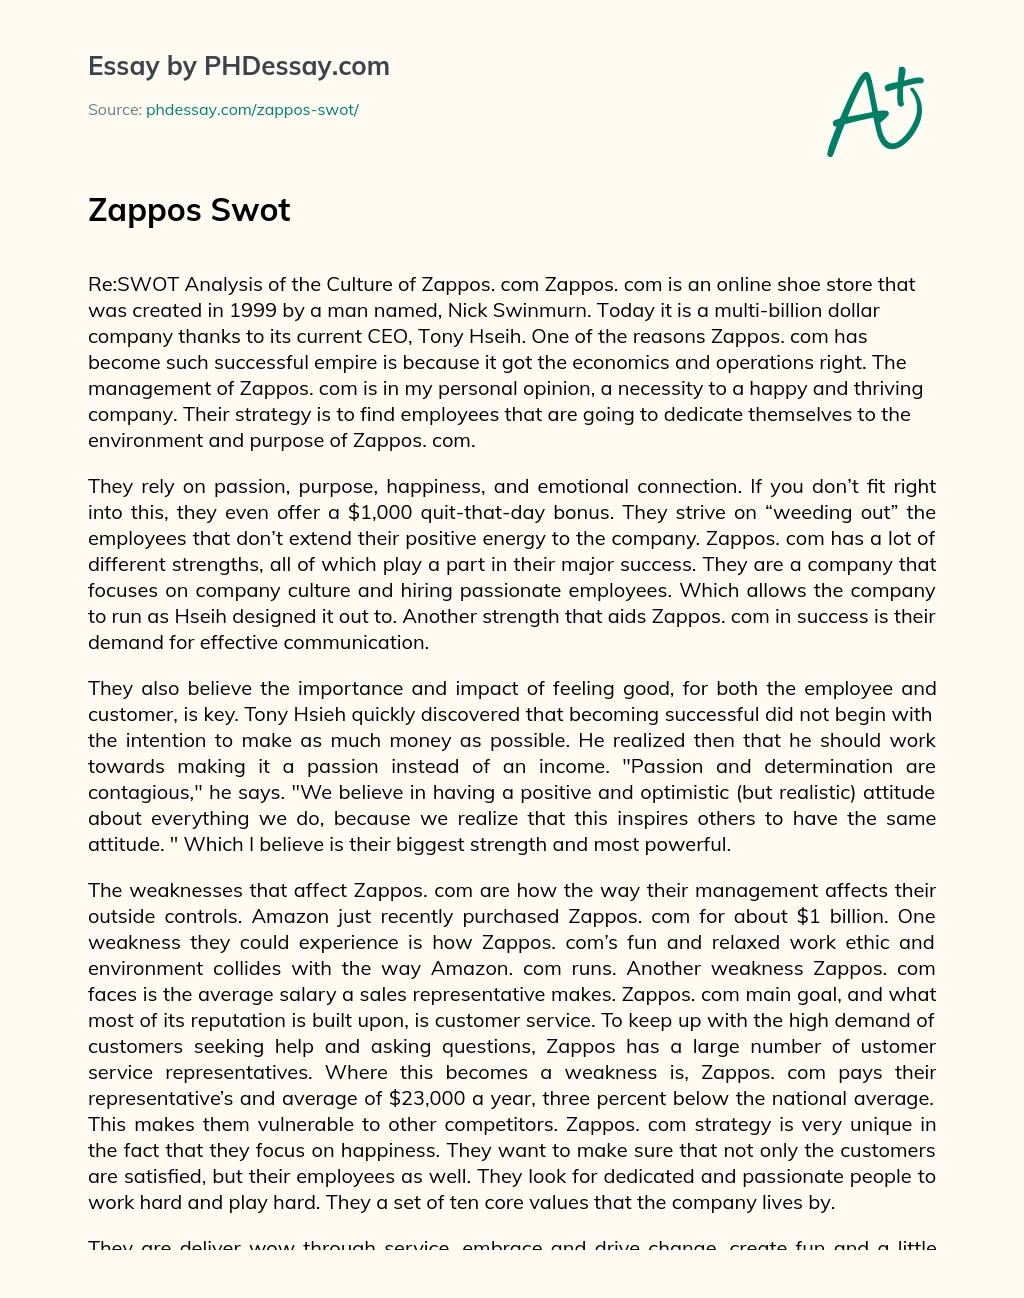 Zappos Swot essay